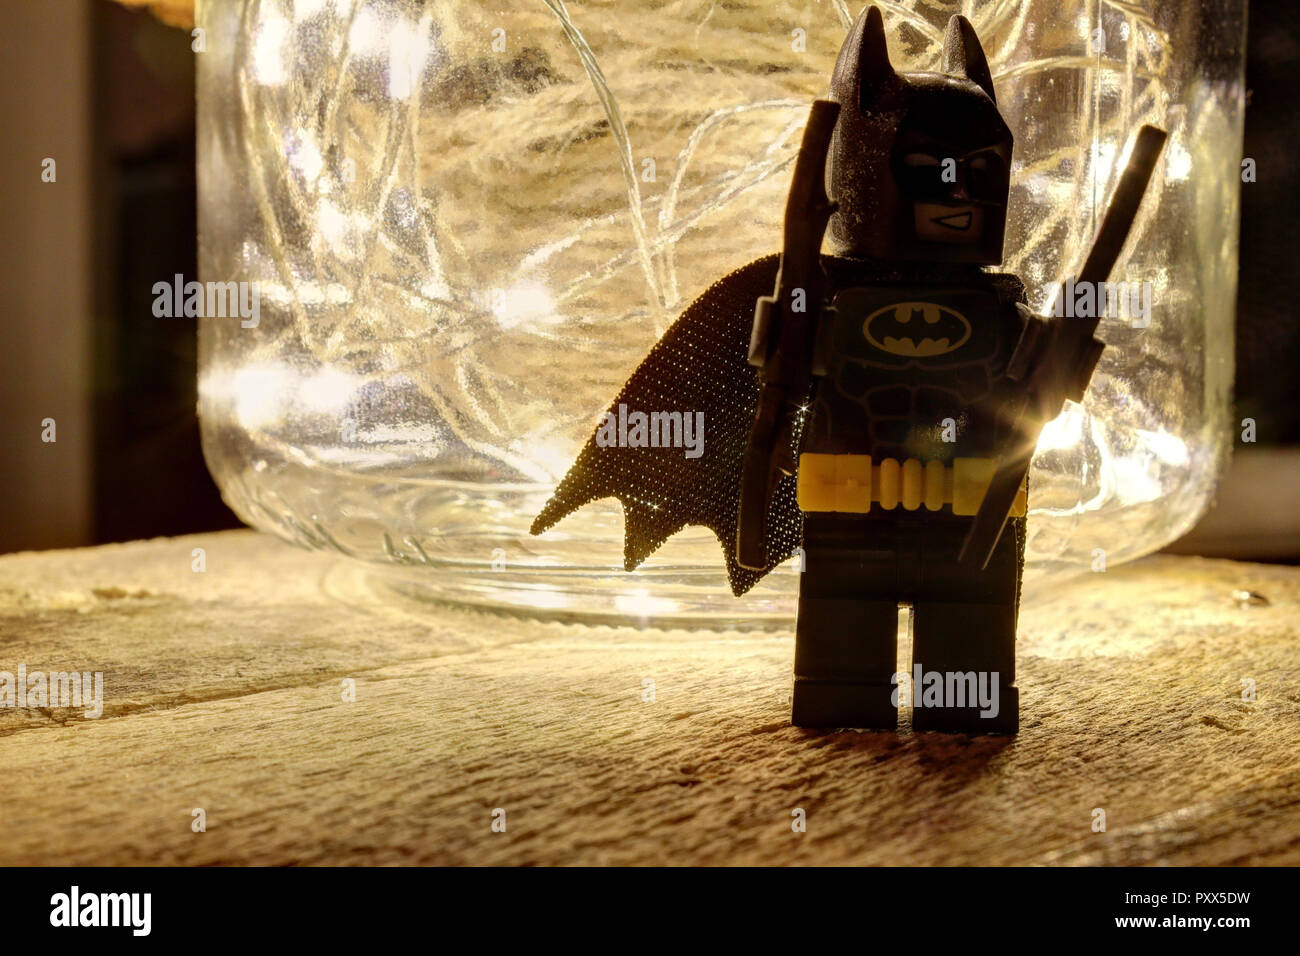 Coringa Minifigure - Fotografias de stock e mais imagens de Batman -  Trabalho conhecido - Batman - Trabalho conhecido, Estatueta, Minifigura Lego  - iStock